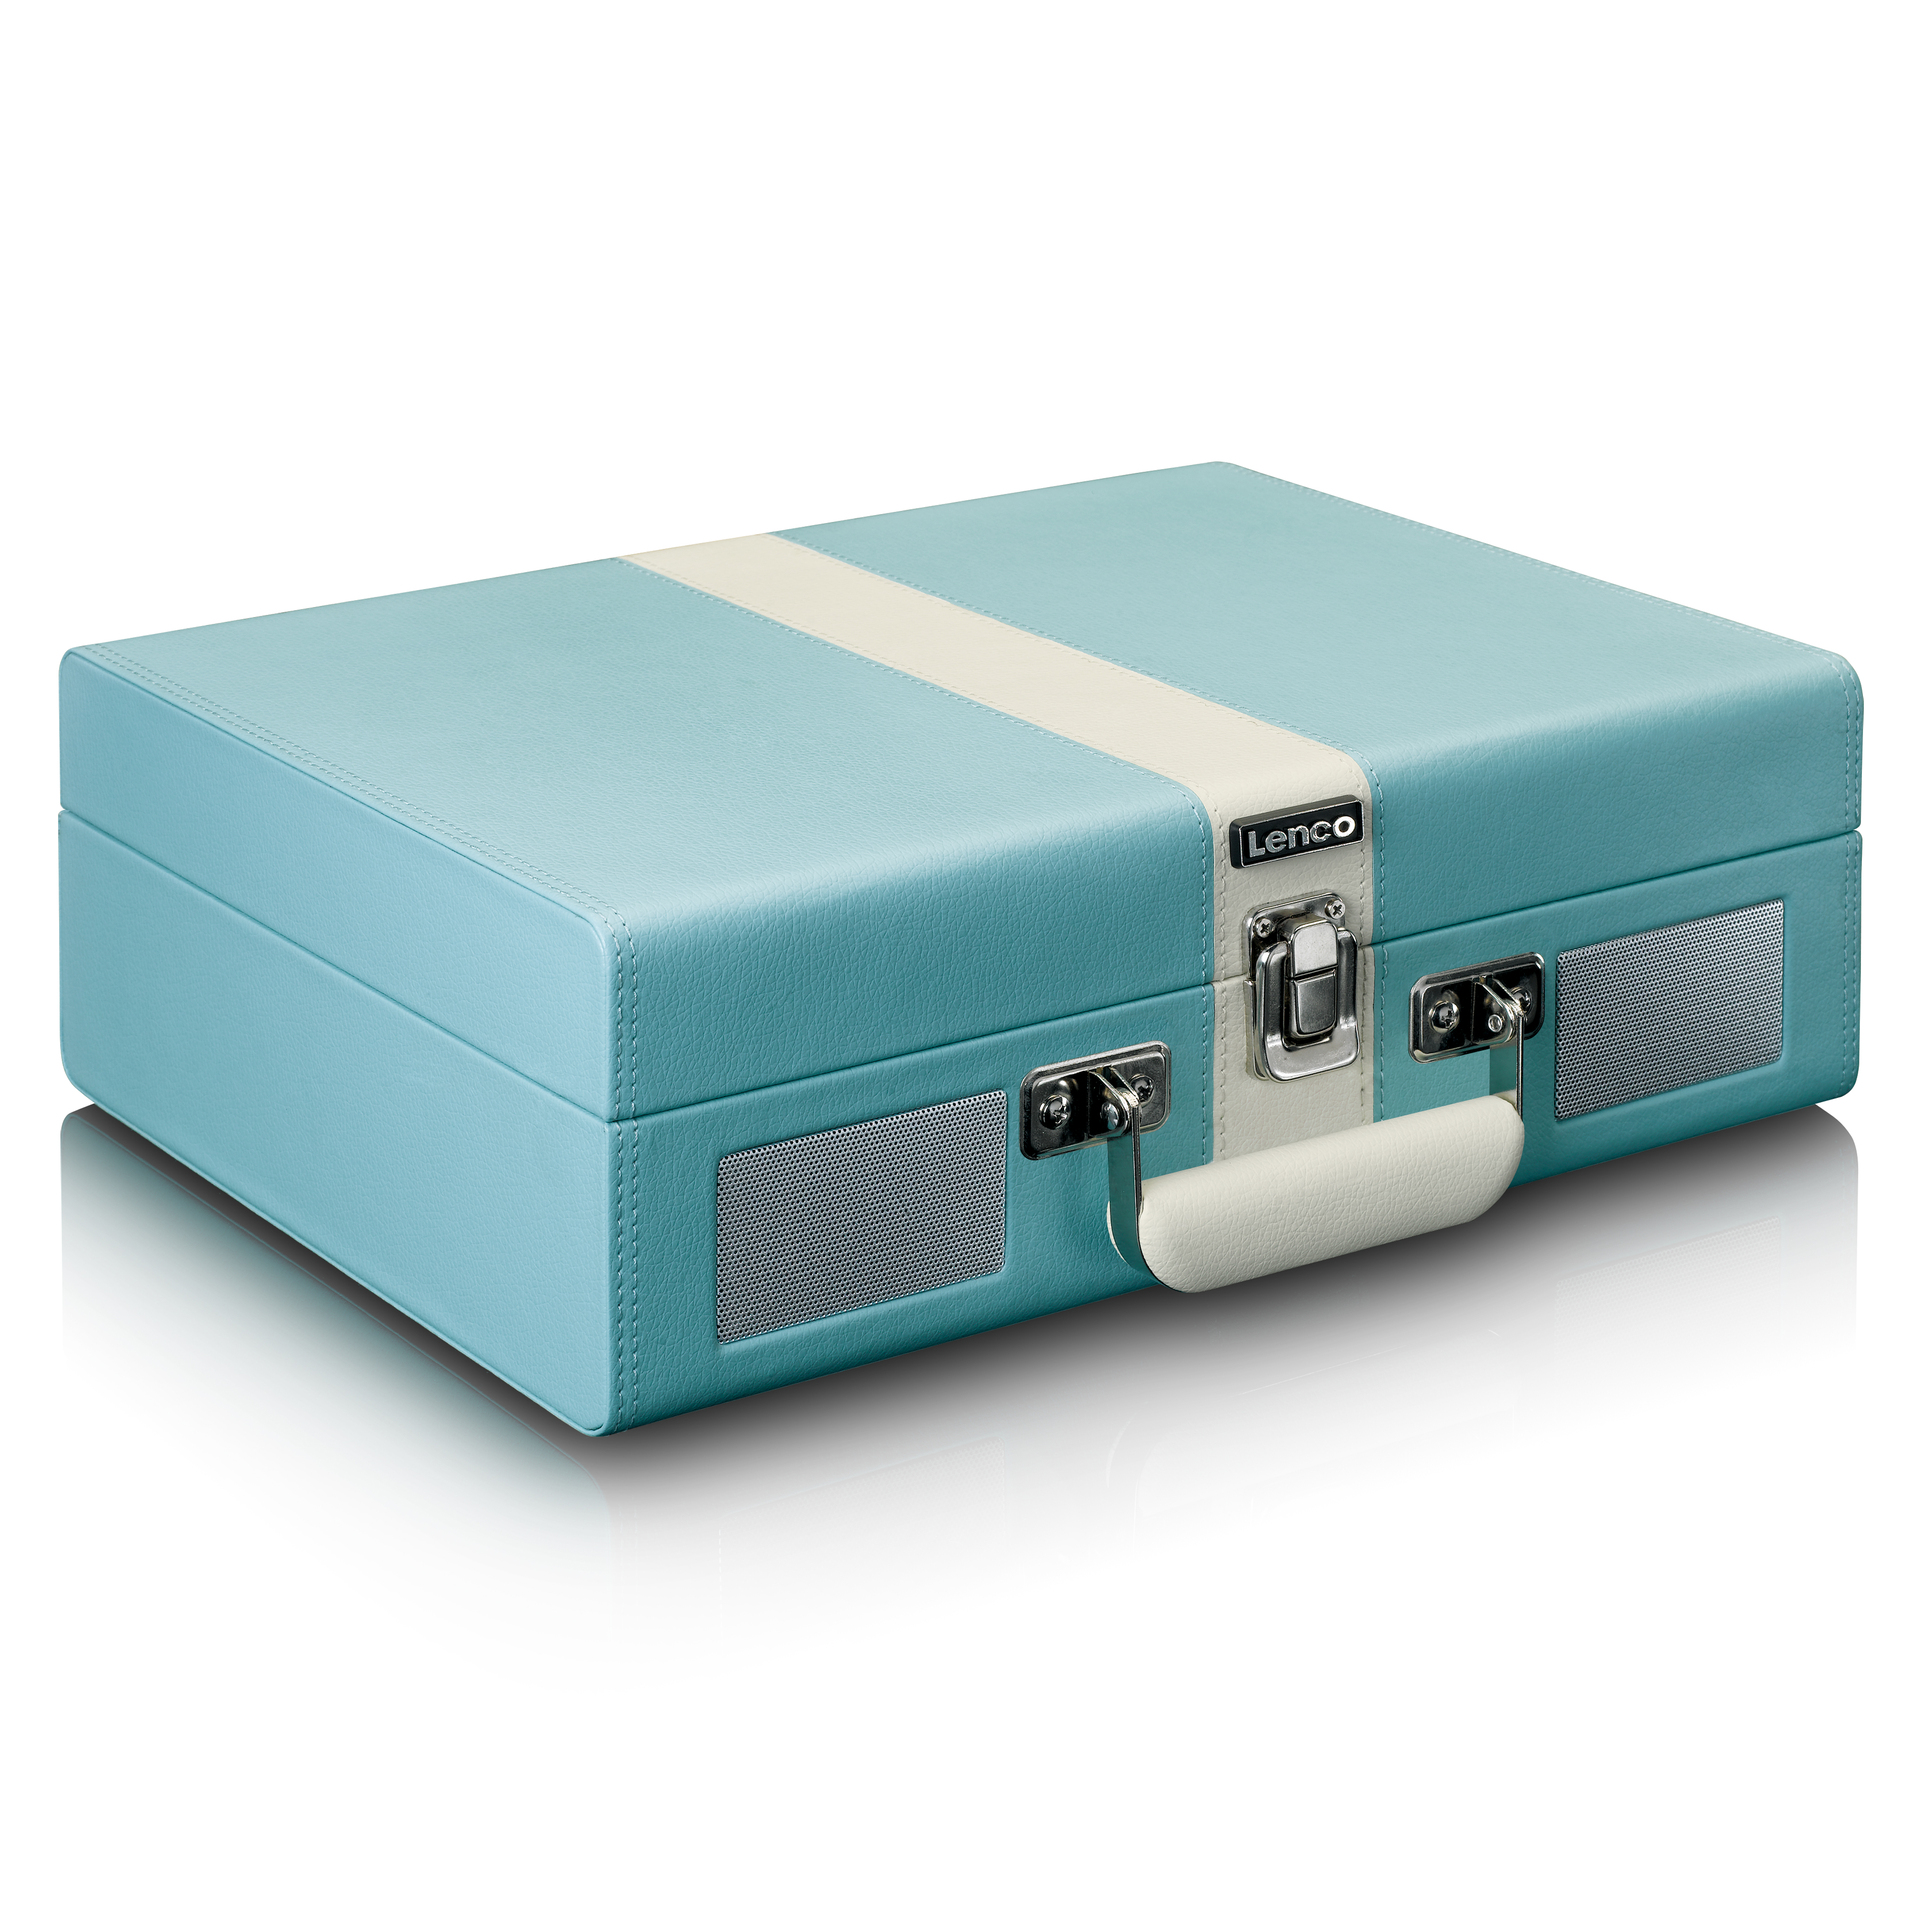 LENCO Koffer-Plattenspieler mit BT Lsp. eingebauten | aetka und Shop